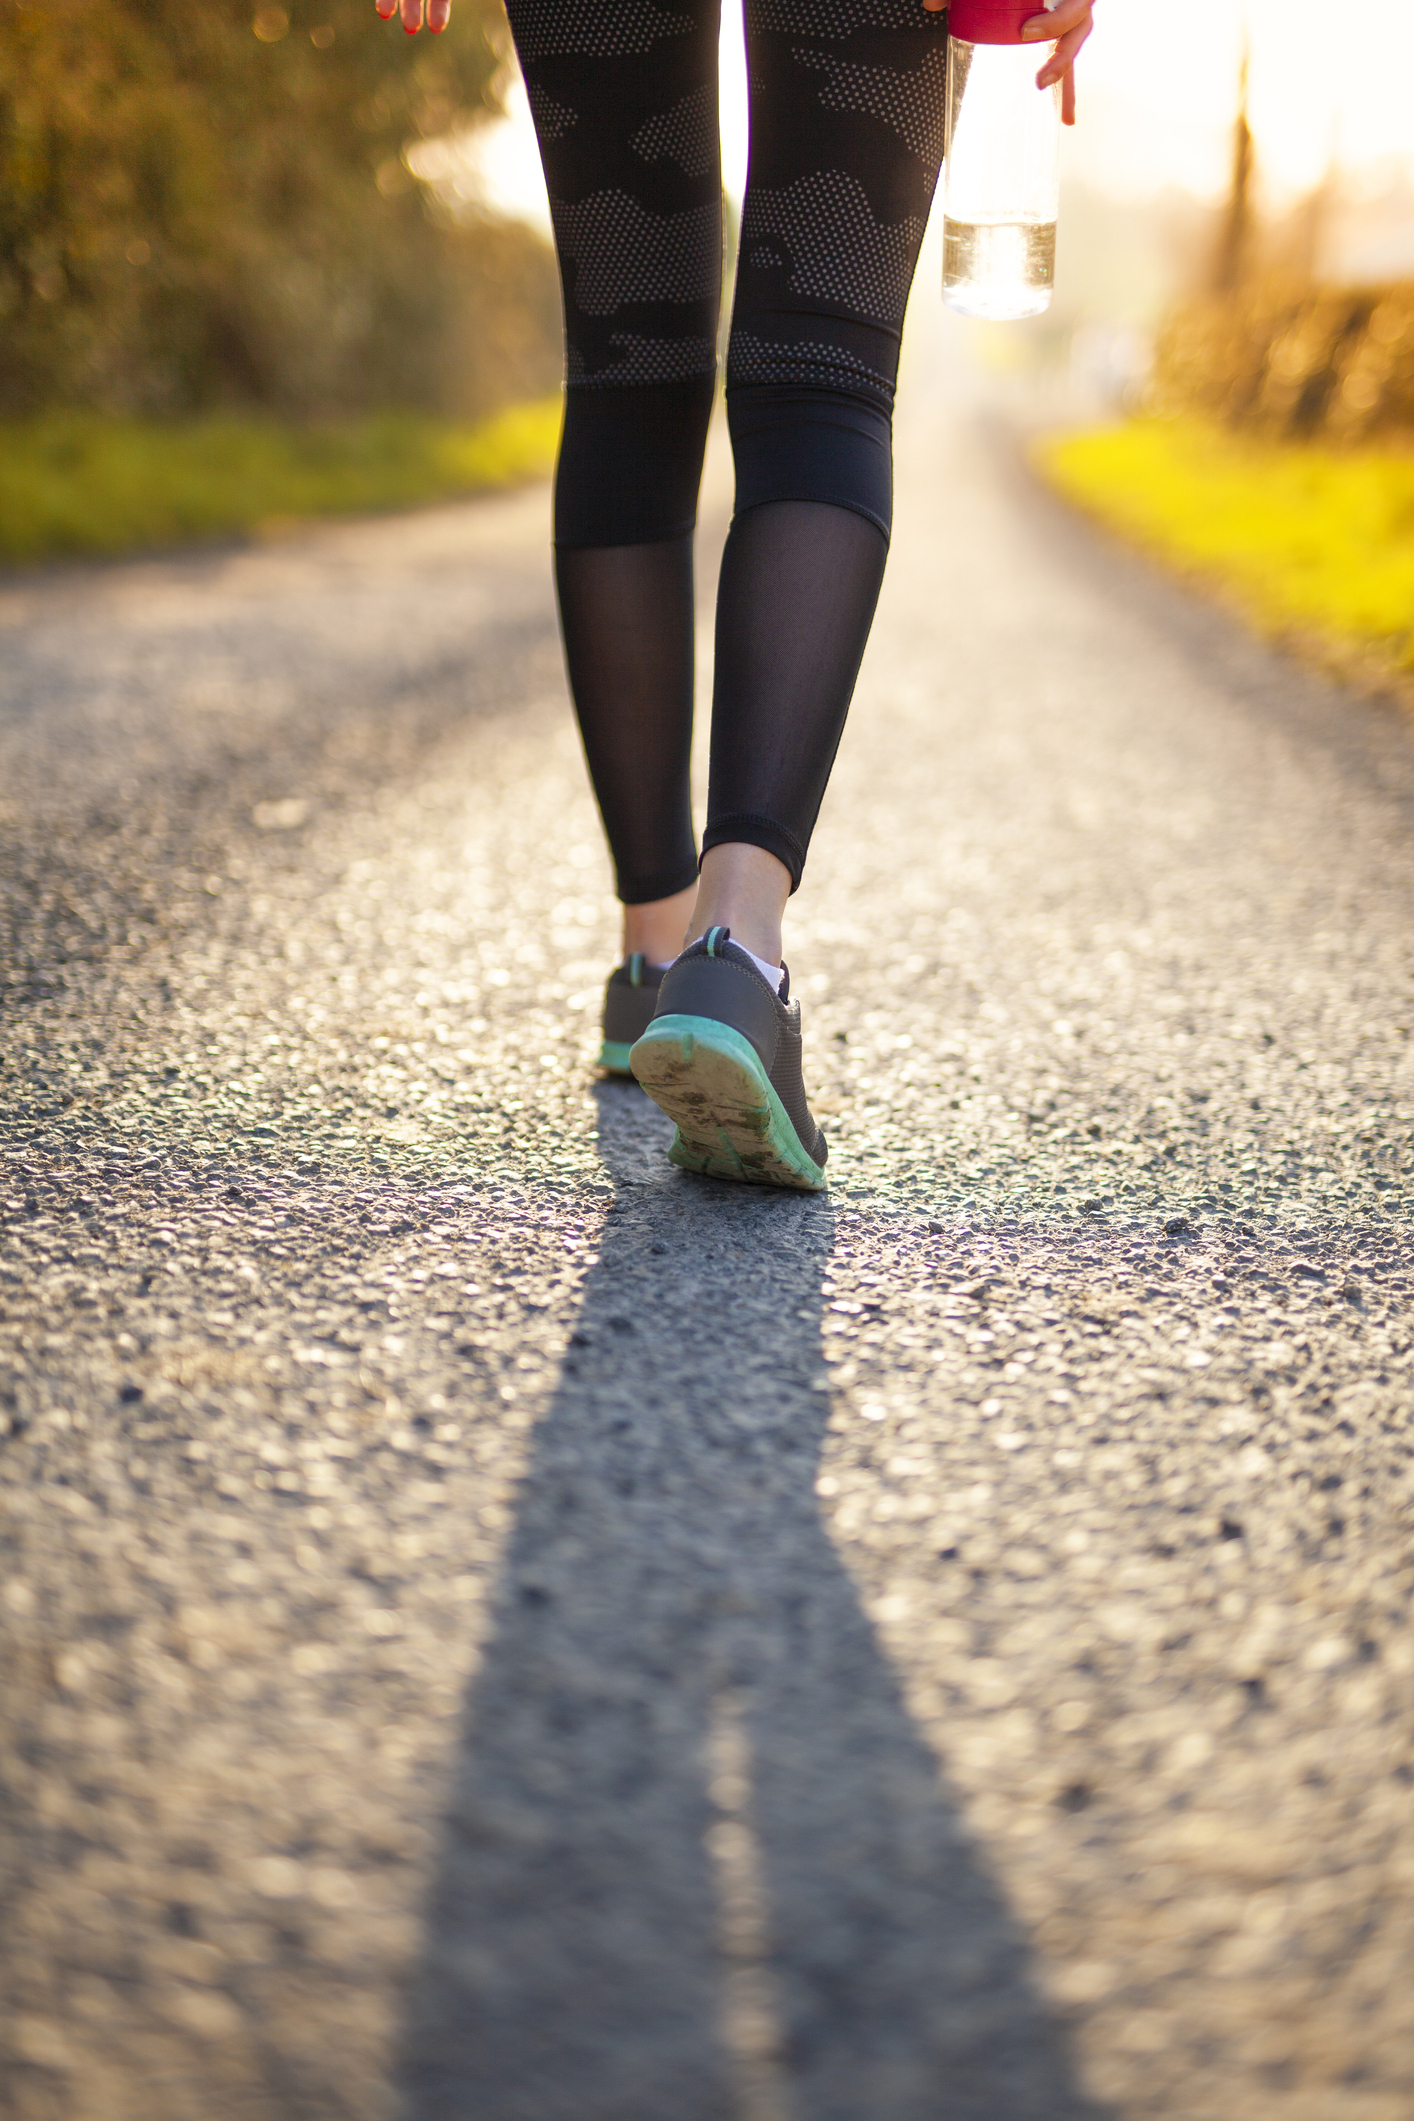 Caminar previene las enfermedades cardiovasculares y aumenta nuestra longevidad.